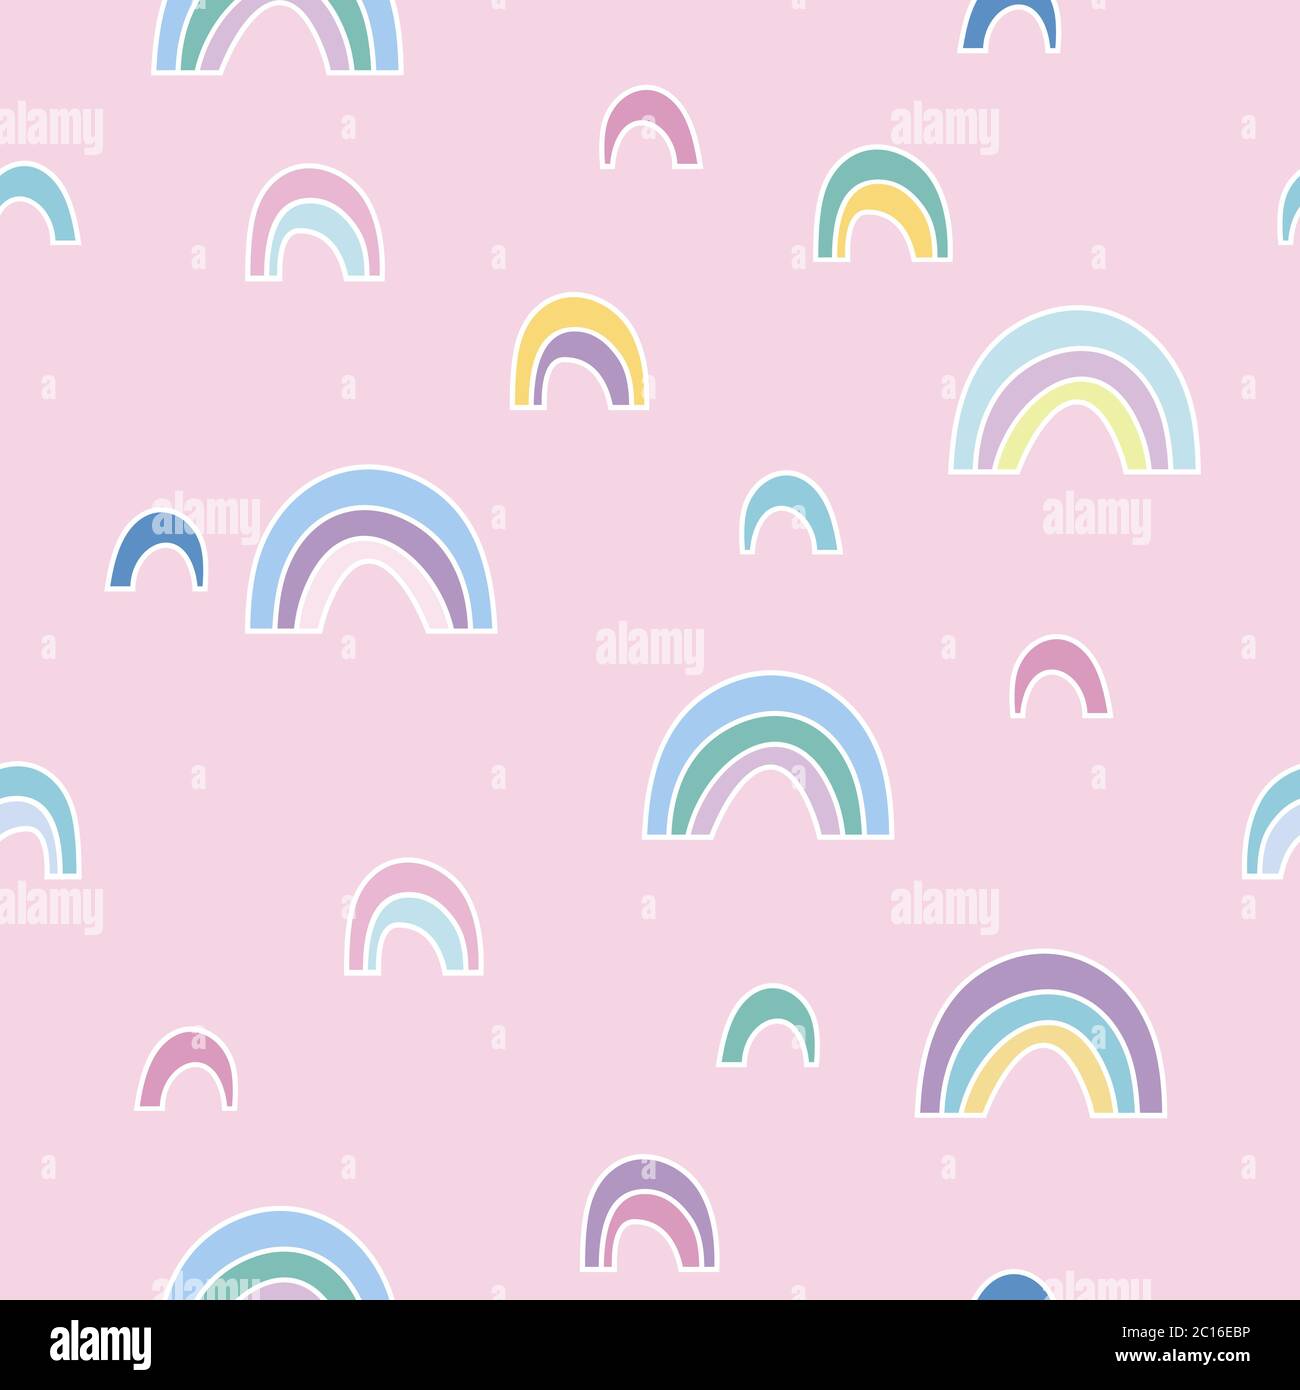 Vektor nahtlose Muster mit niedlichen Regenbogen-ähnliche abstrakte Formen mit sanften Farben Stock Vektor